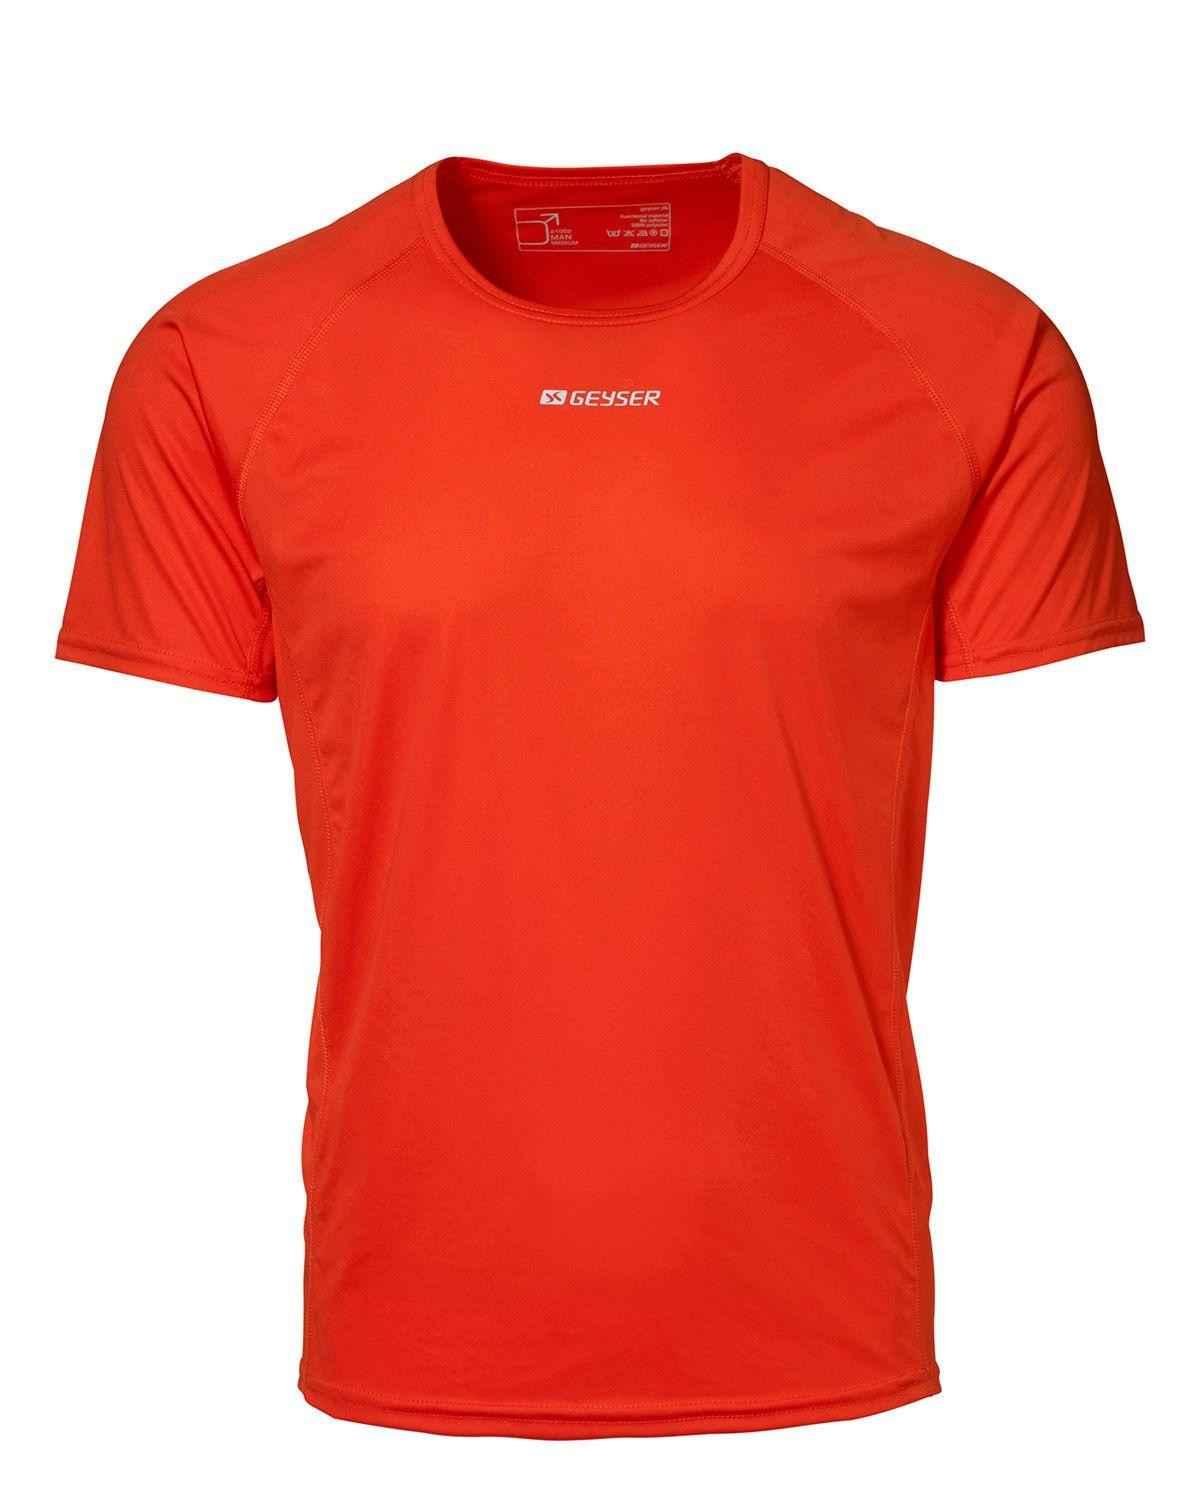 GEYSER Active T-shirt til Herre (Orange, M)